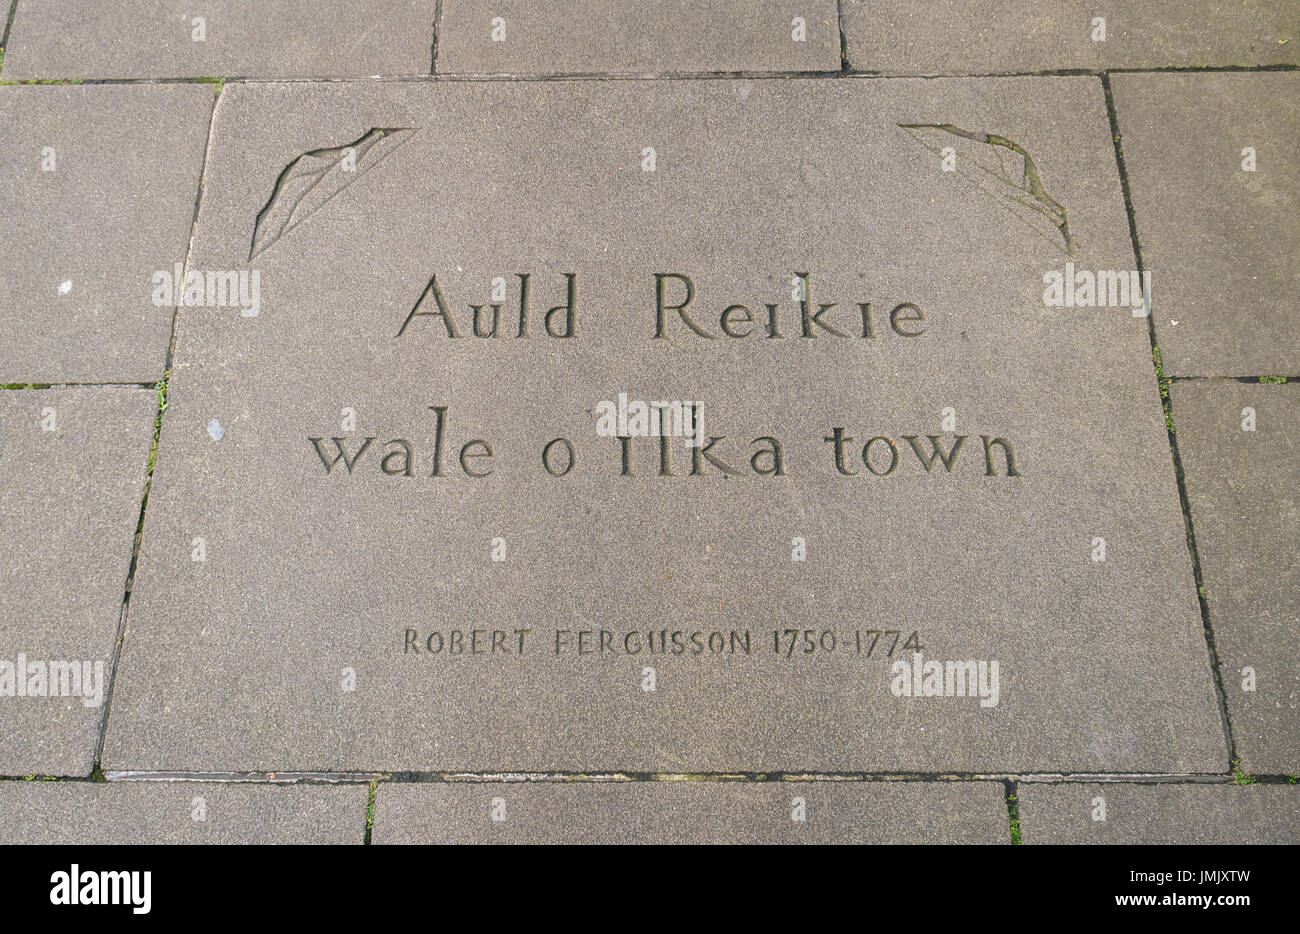 Citazione in pavimentazione, Makar's Court, Writers Museum, Edimburgo, dal poeta scozzese Robert Fergusson citazione forma un poemScotland, Regno Unito Foto Stock